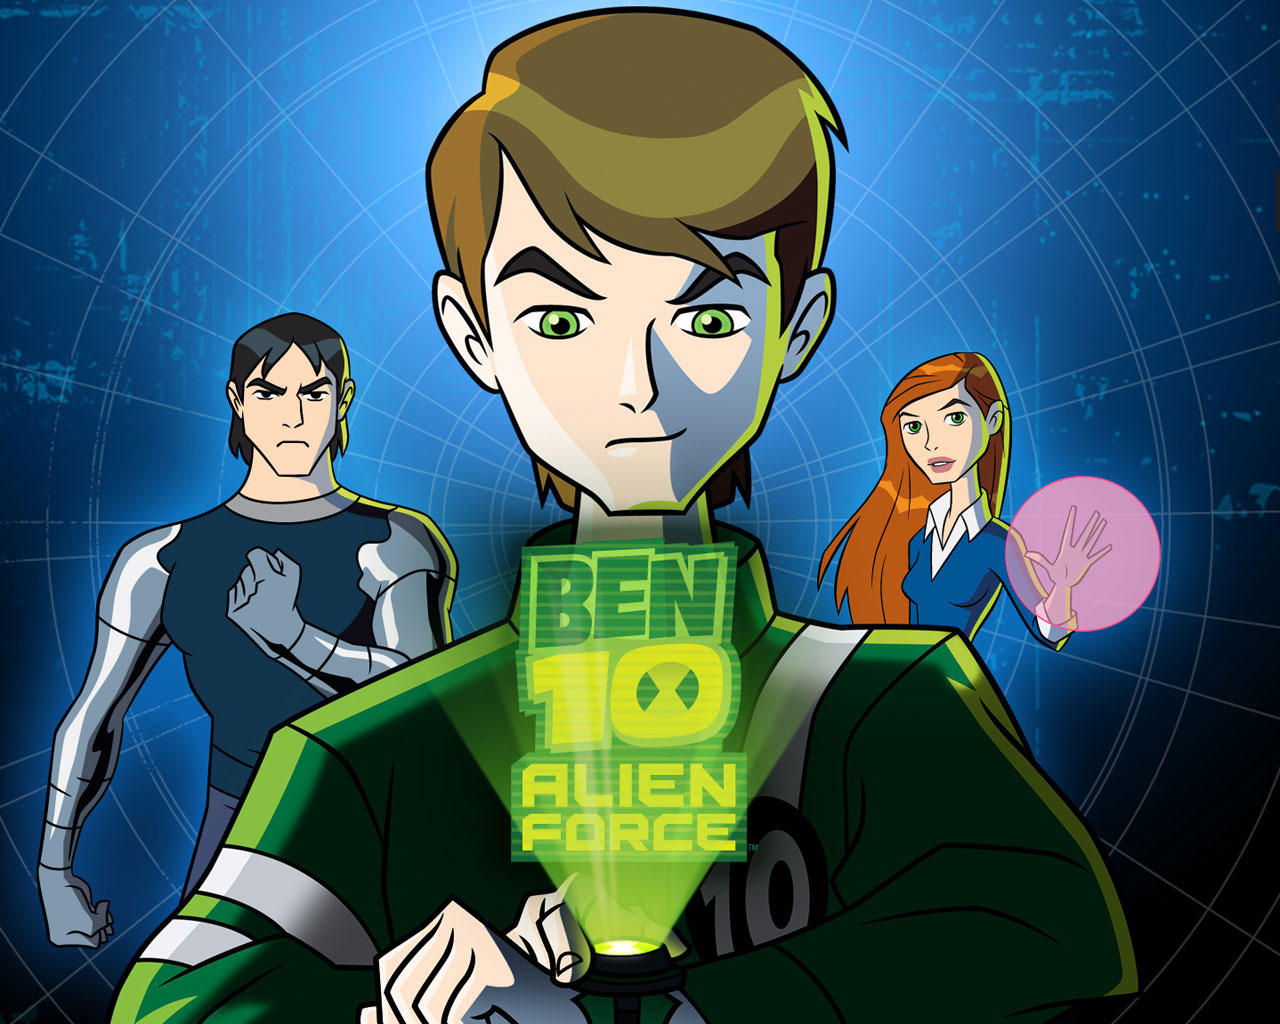 Ben 10: Alien Force Episodes, Ben 10 Wiki